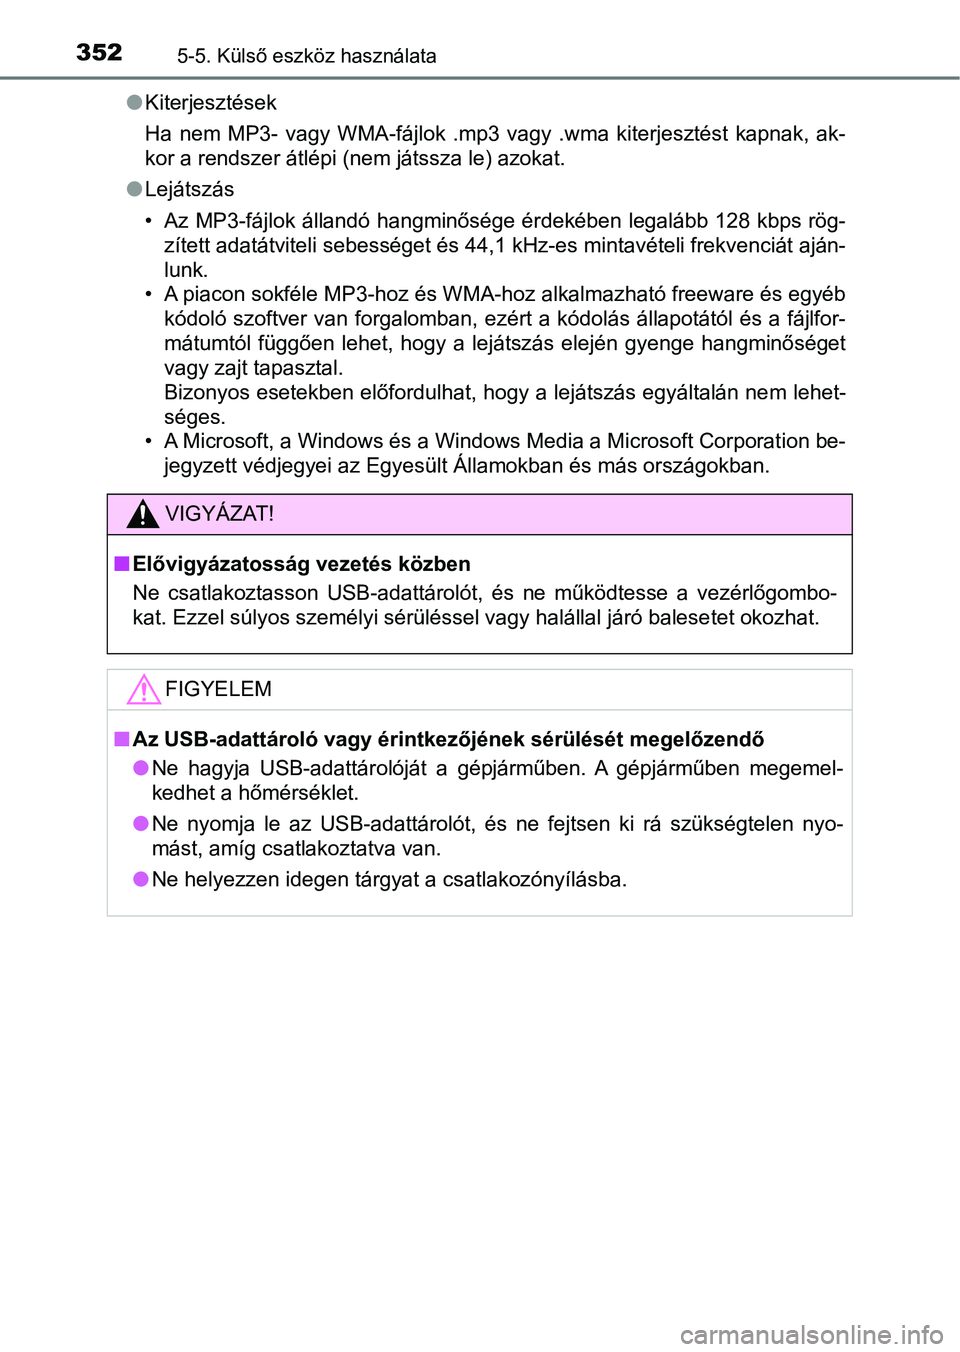 TOYOTA YARIS HATCHBACK 2018  Kezelési útmutató (in Hungarian) 3525-5. Külső eszköz használata
lKiterjesztések
Ha  nem  MP3-  vagy  WMA-fájlok  .mp3  vagy  .wma  kiterjesztést  kapnak,  ak-
kor a rendszer átlépi (nem játssza le) azokat.
l Lejátszás
�